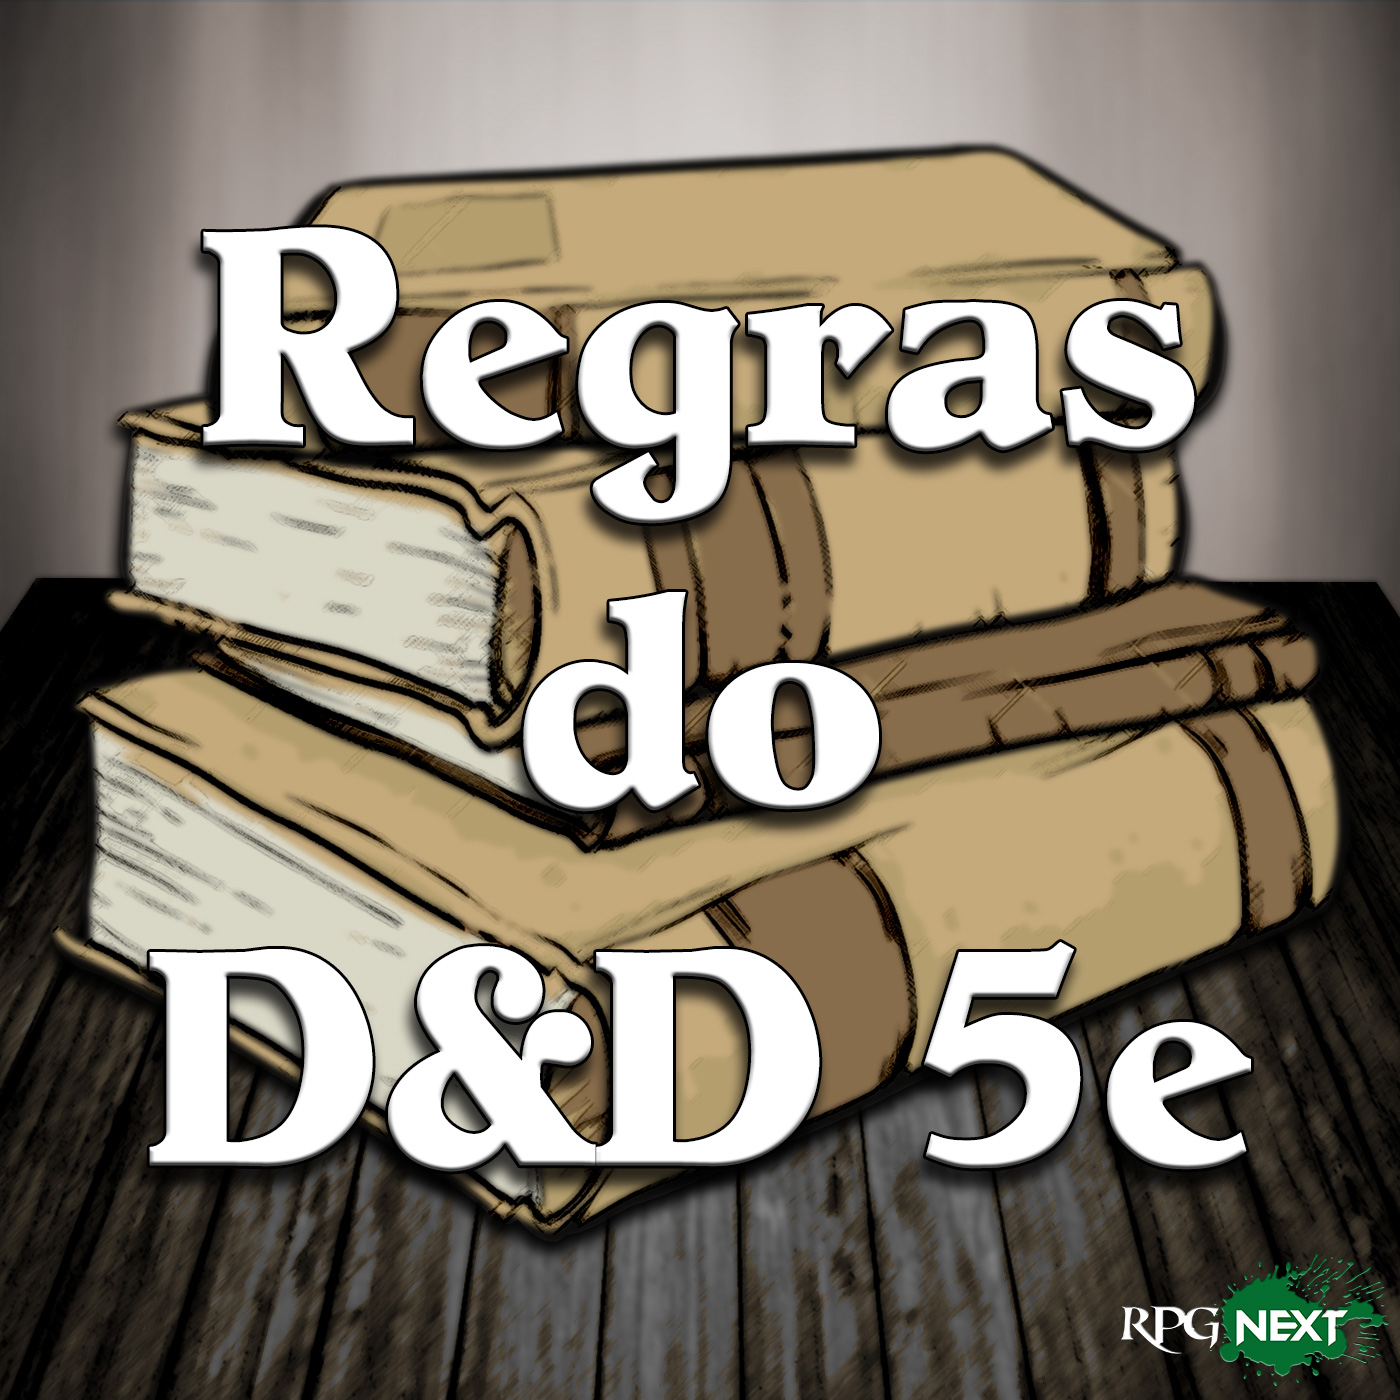 RPG Next: Regras do DnD 5e Podcast artwork